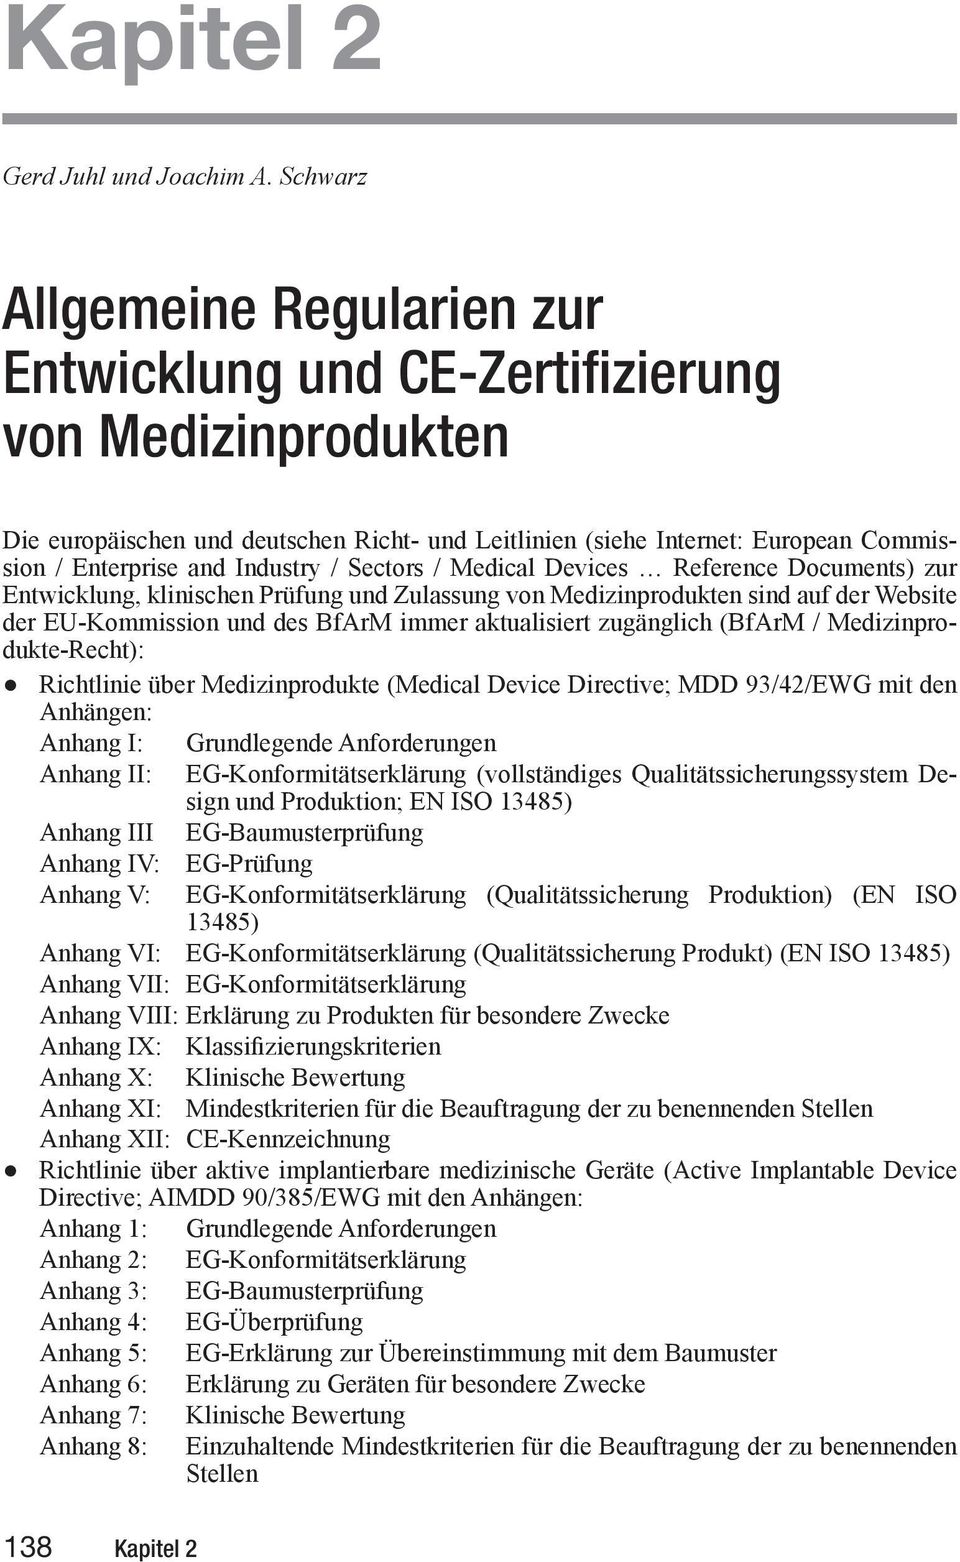 Industry / Sectors / Medical Devices Reference Documents) zur E wick, kli isch Pr Zula vo Medizi produk si auf der Website der EU-Kommission und des BfArM immer aktualisiert zugänglich (BfArM /